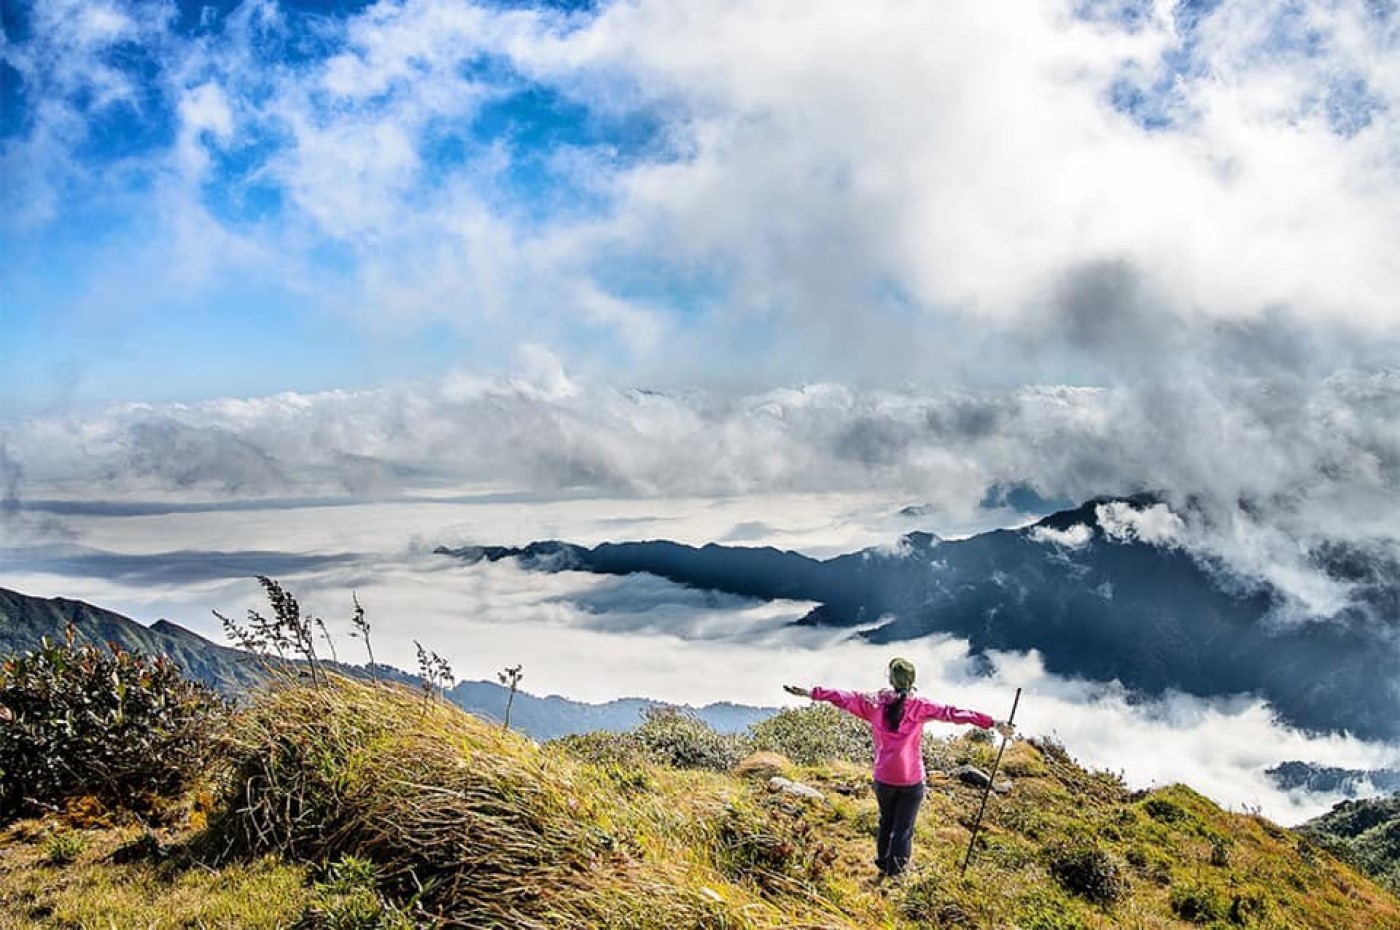 Chia sẻ bí kíp chinh phục đỉnh Lùng Cúng cho hội đam mê trekking